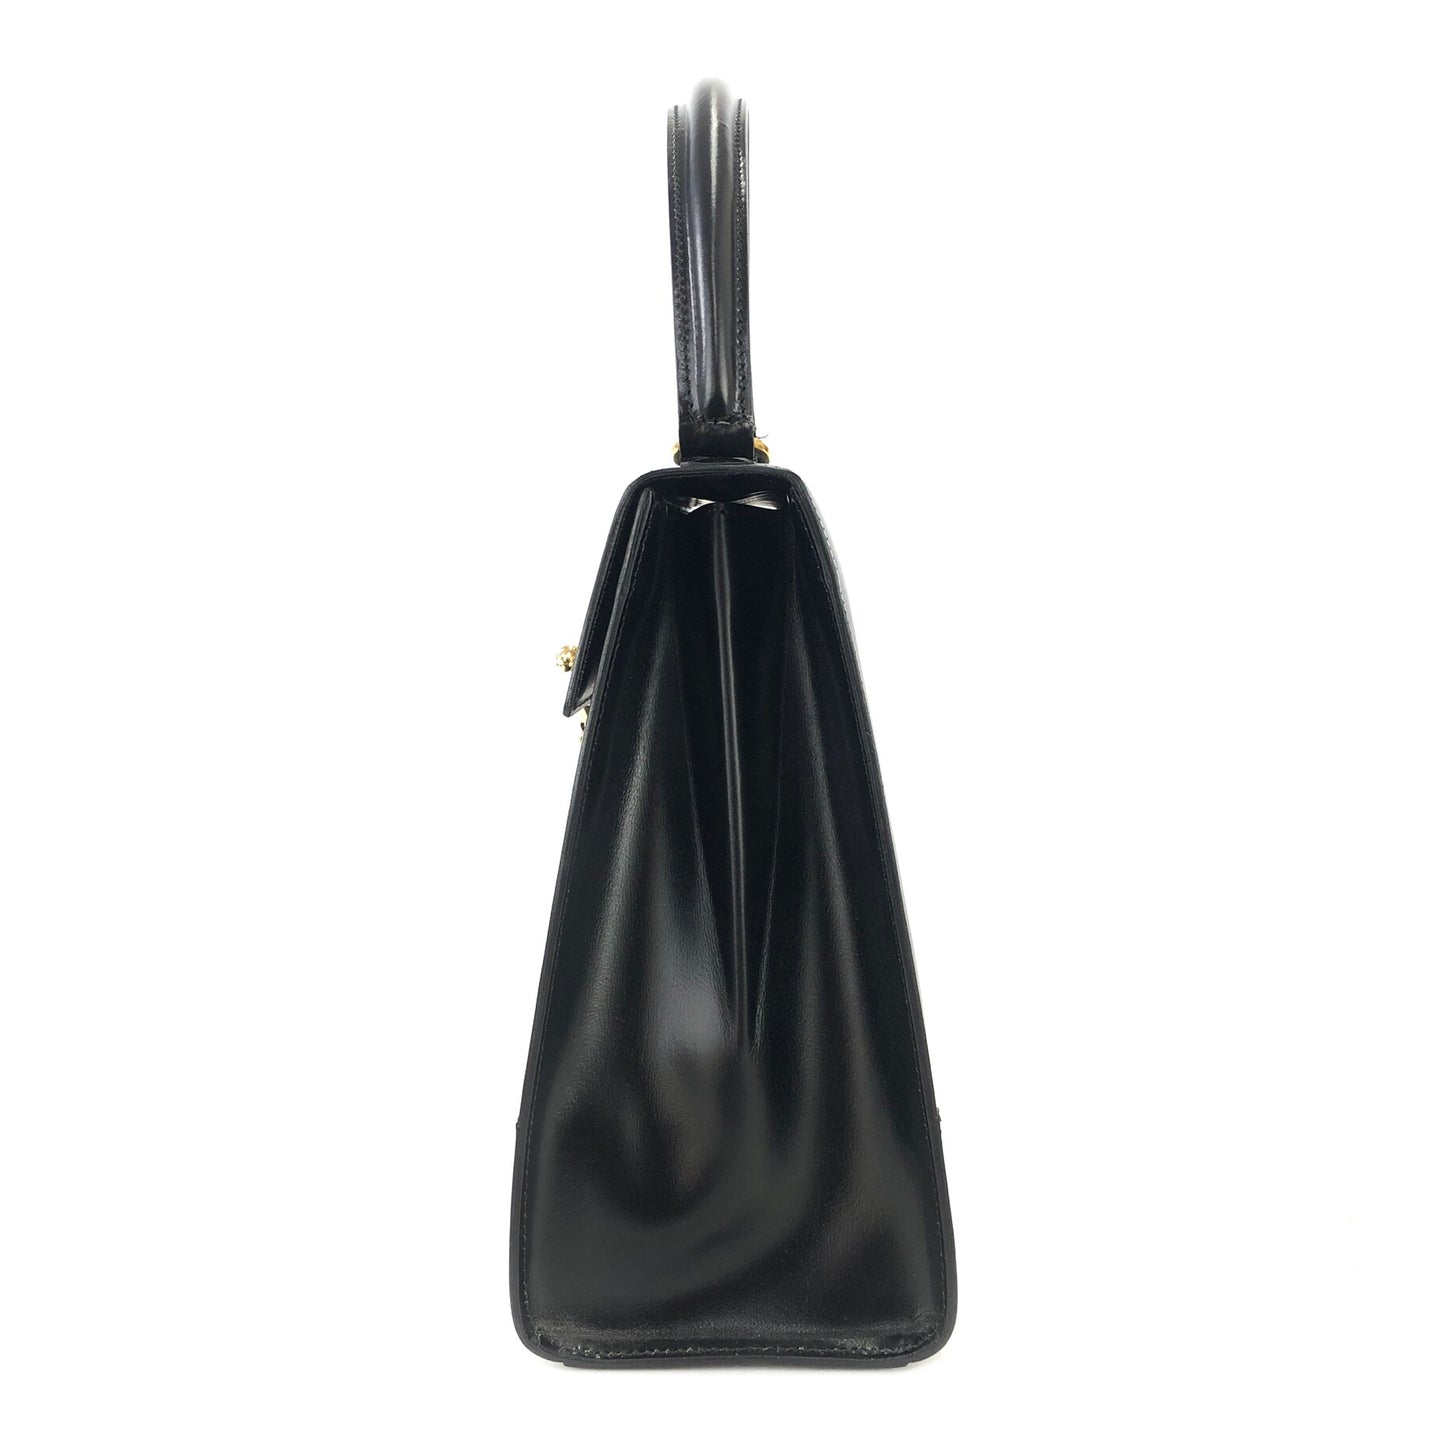 CELINE Mantel Chain Gancini Handbag Crossbody Shoulder bag Black Vintage Old Celine v4rchb